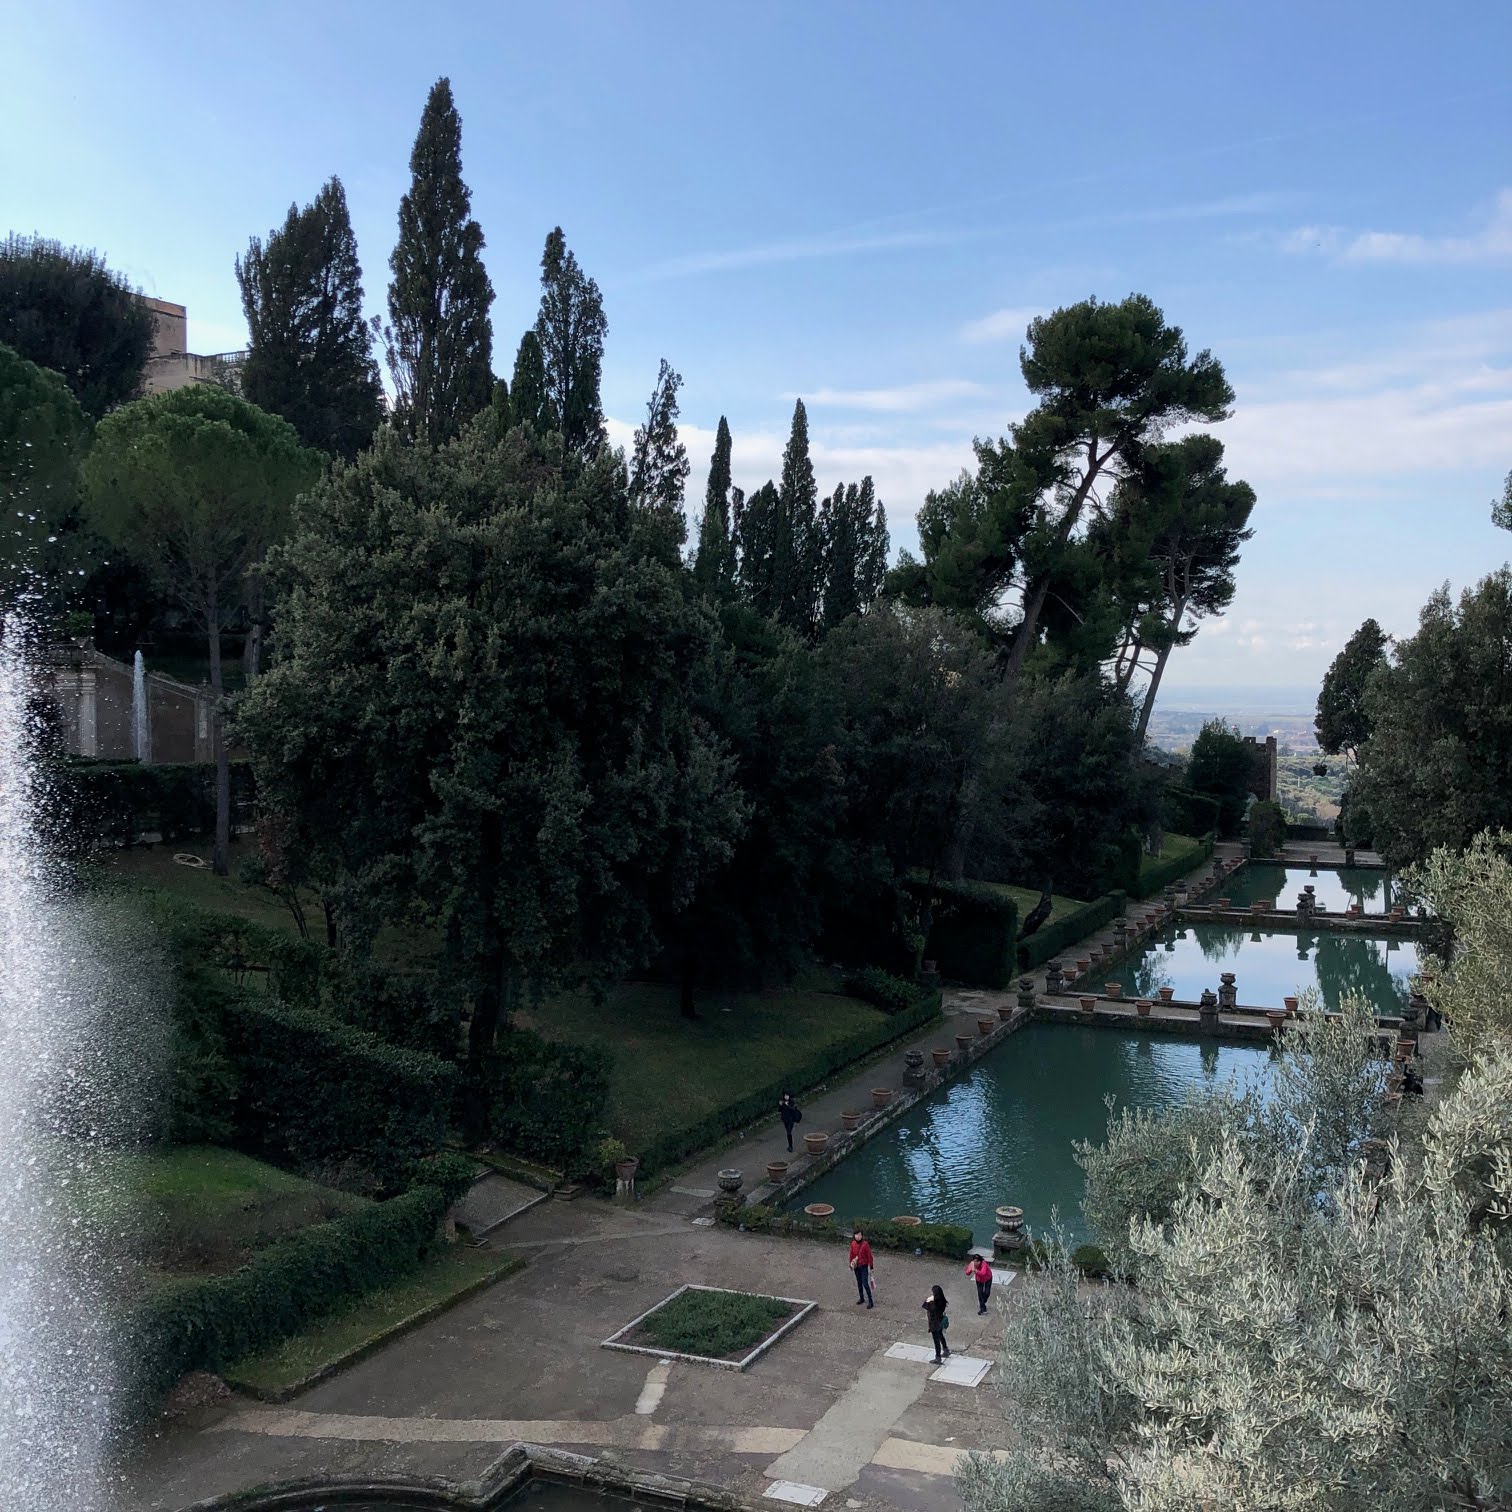 2019 Sabbatical Tivoli Garden Rome